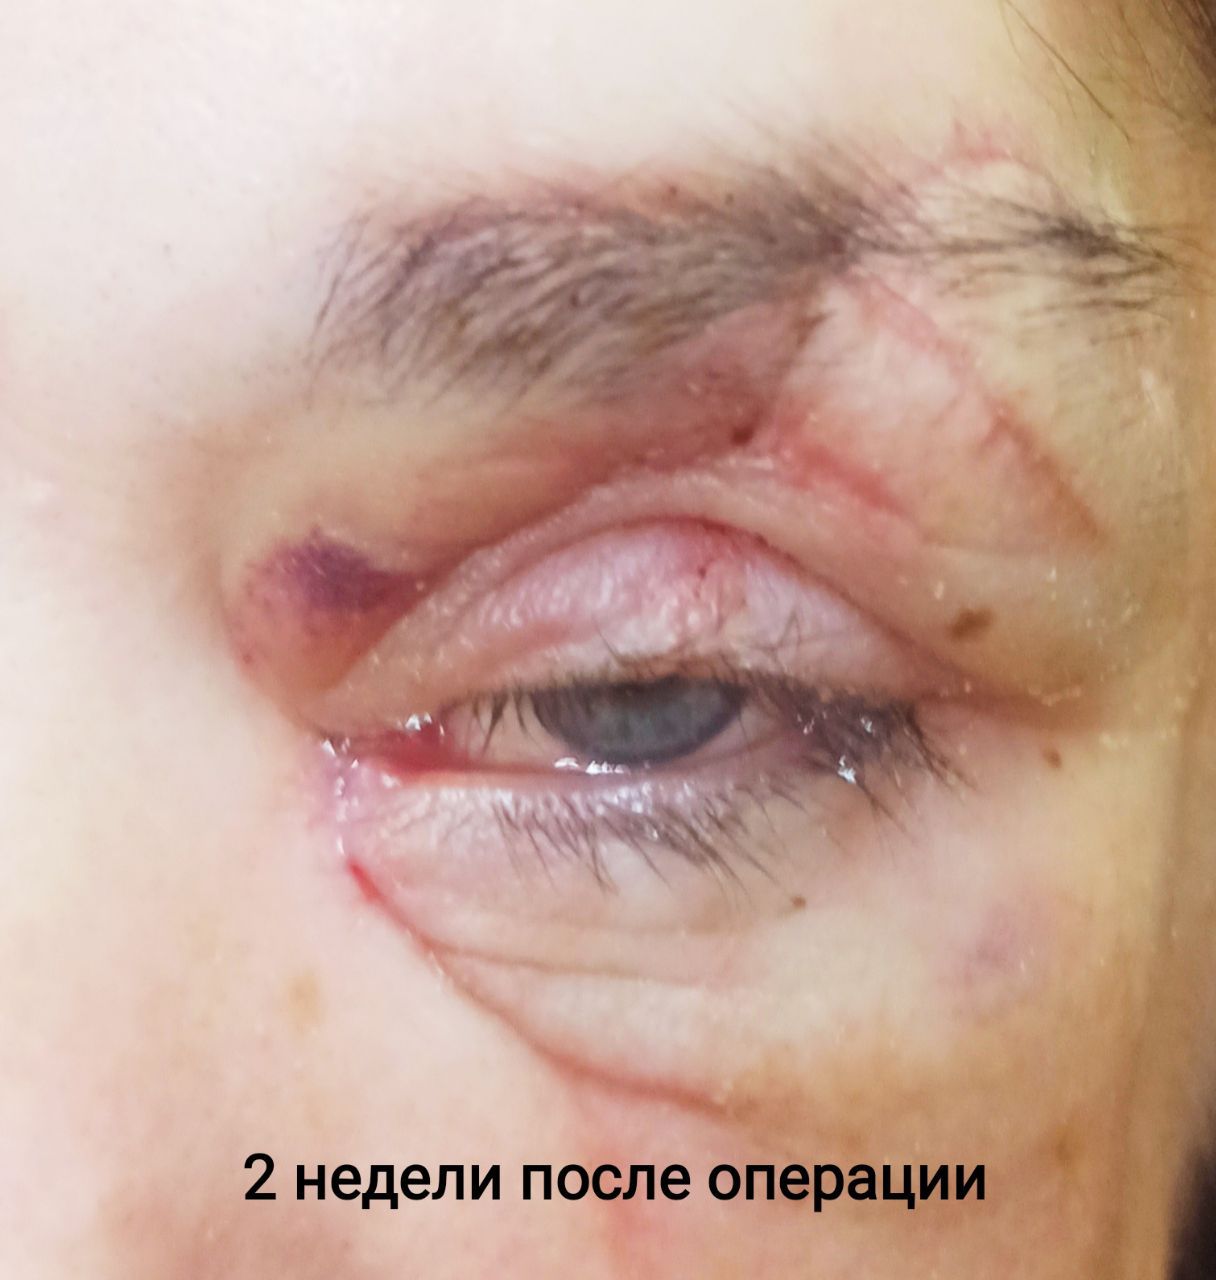 В Новороссийске медики сшили порезанные веки молодой женщины